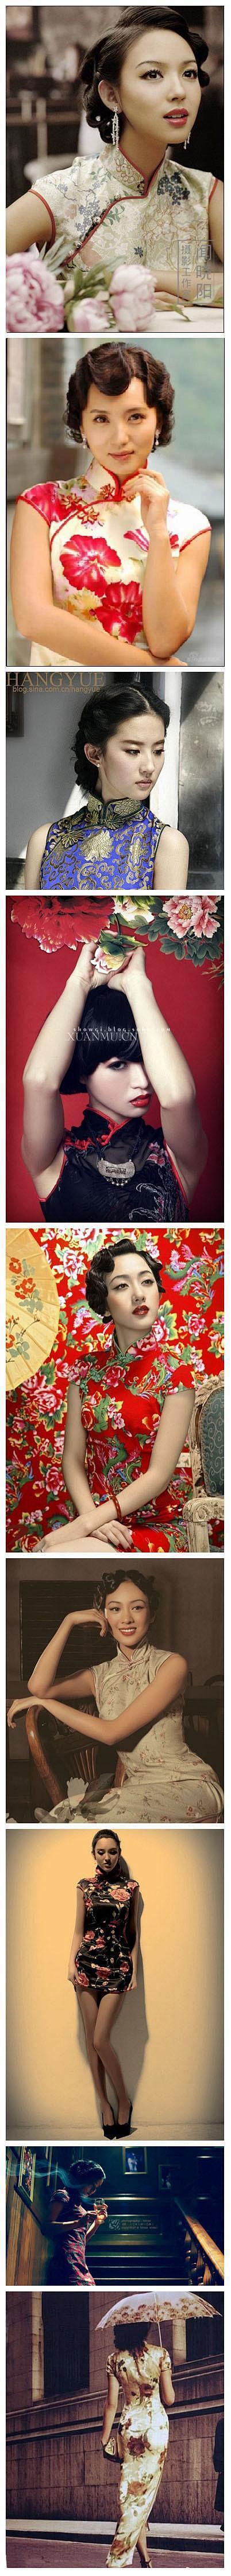 中国传统之美——旗袍。旗袍是女性服饰之一...